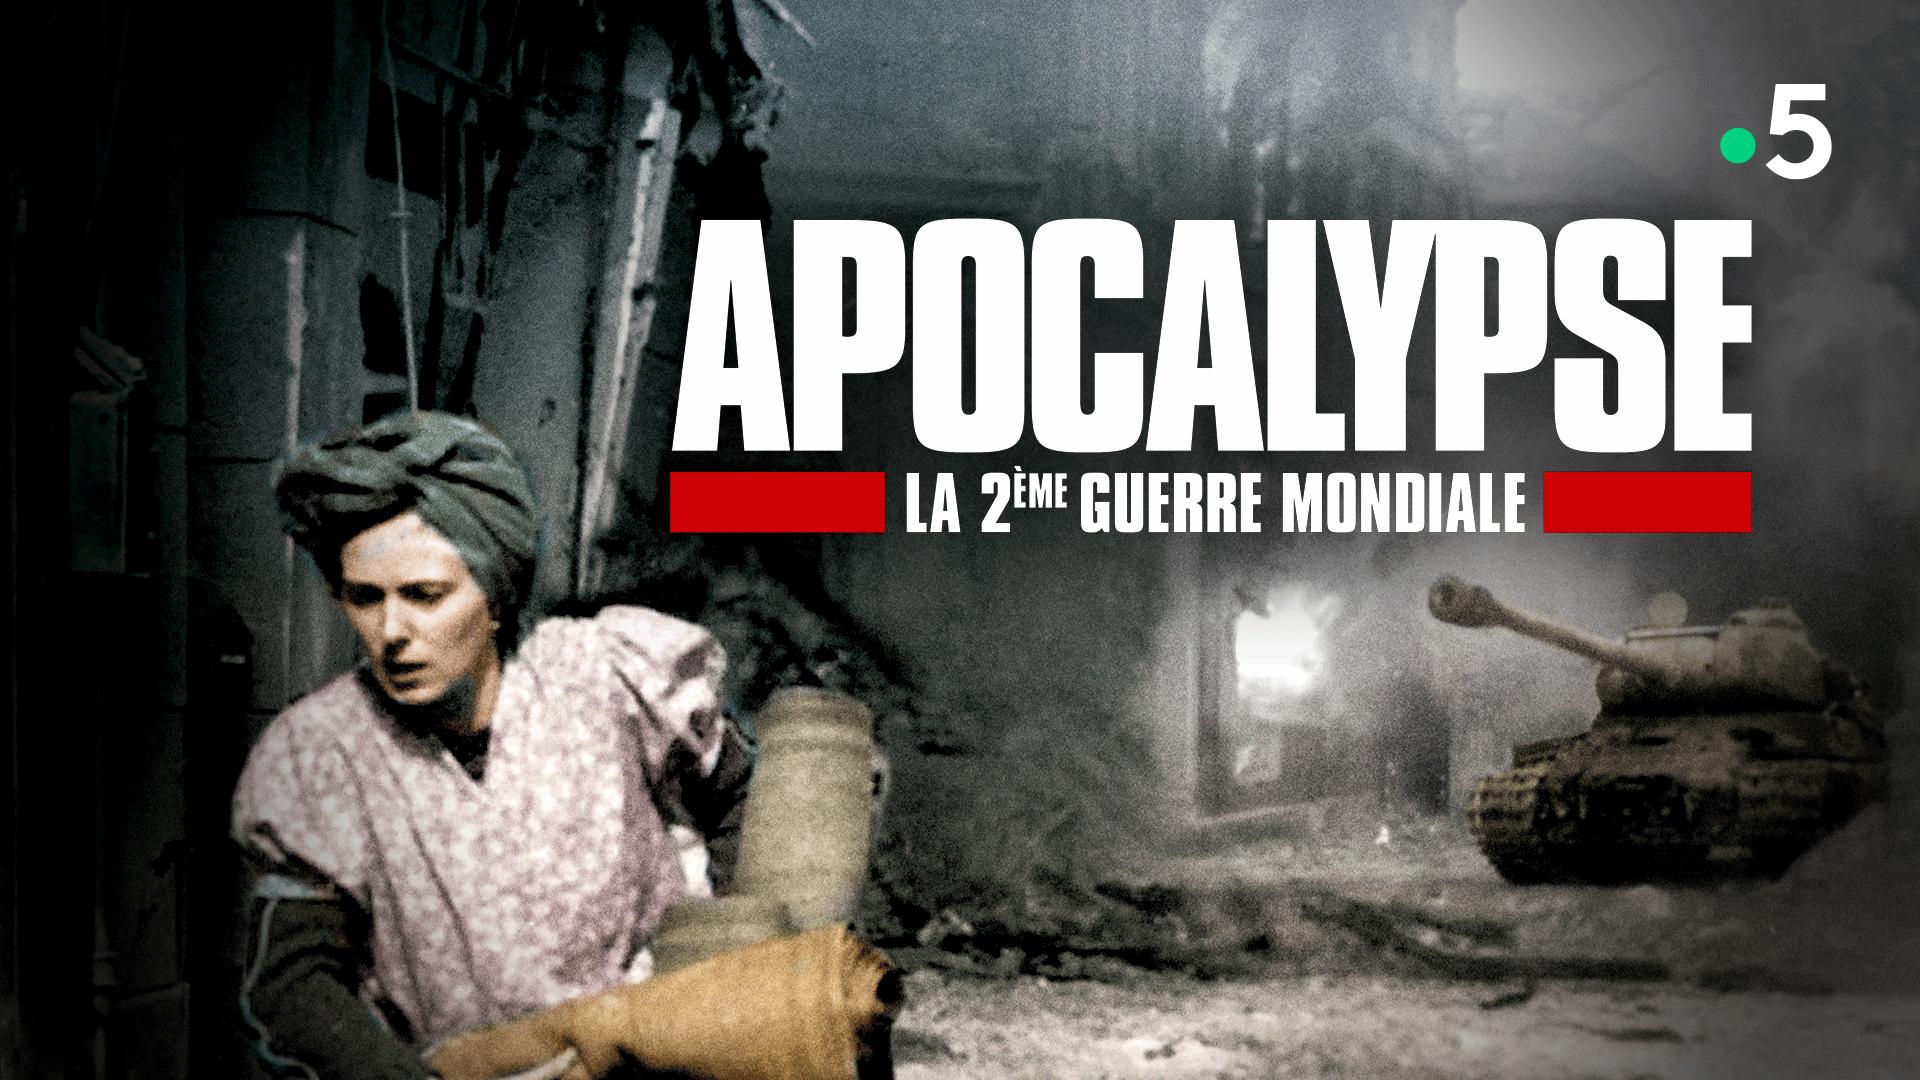 « Apocalypse, la Deuxième Guerre mondiale » : un documentaire aux images choc